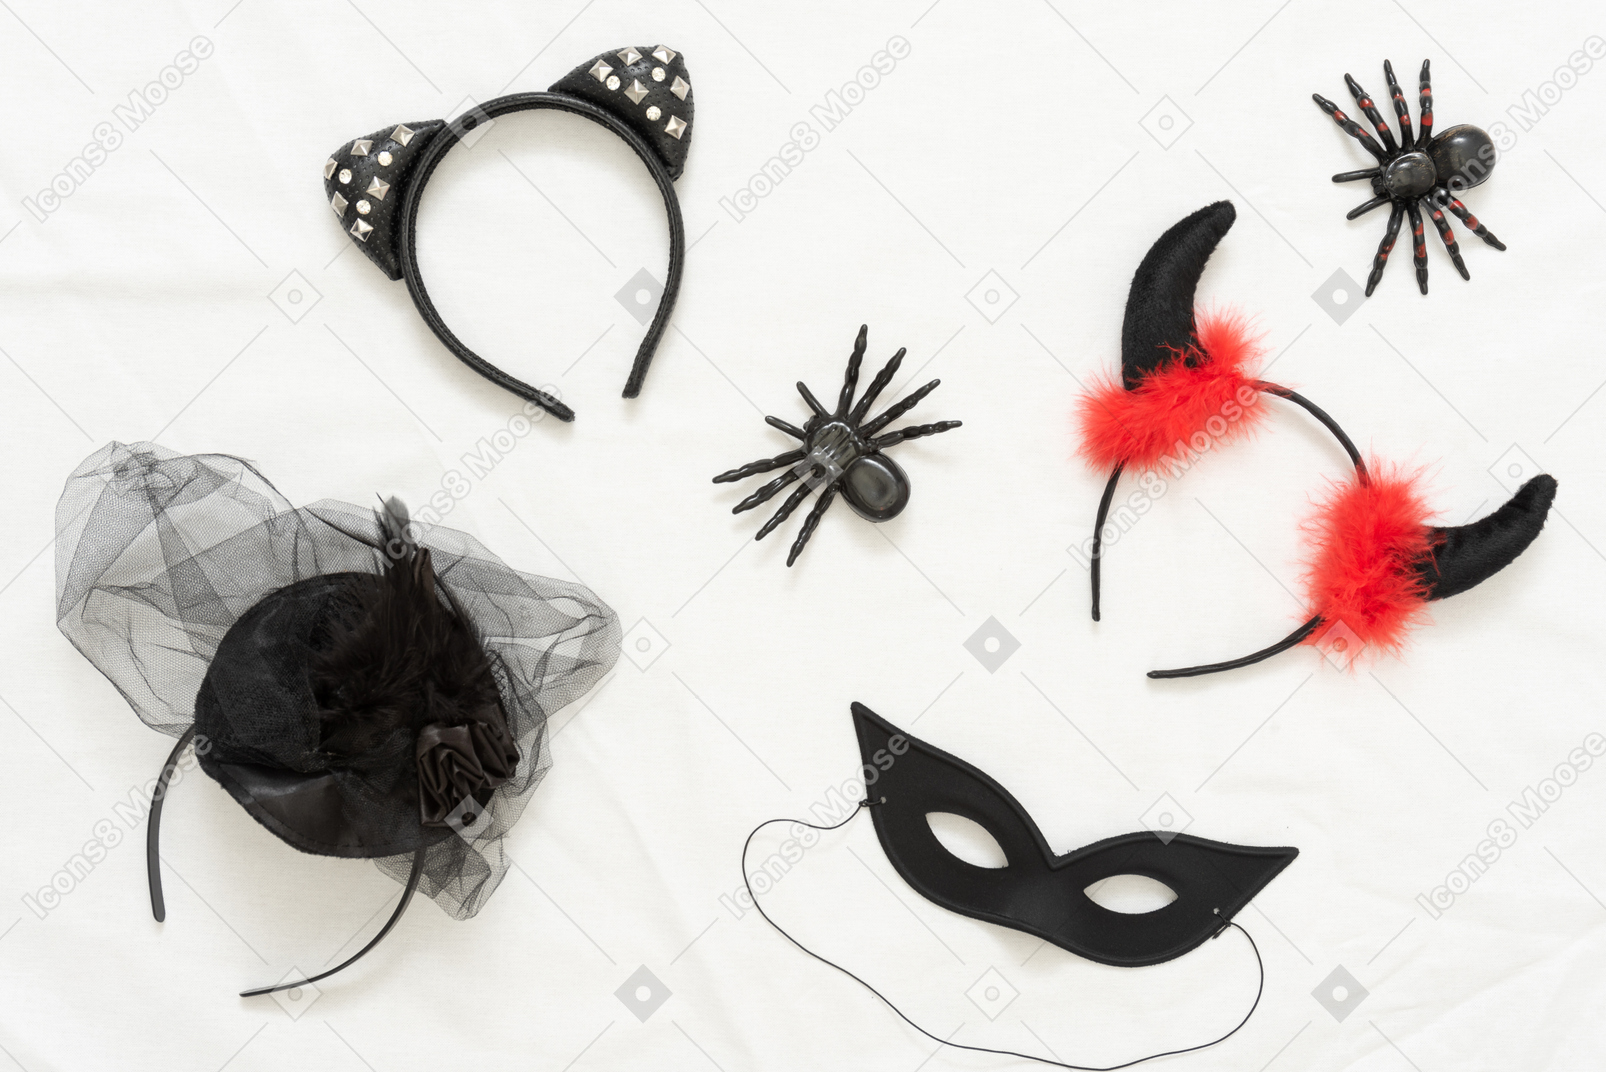 Cintas de halloween diferentes, arañas de juguete y una máscara negra.